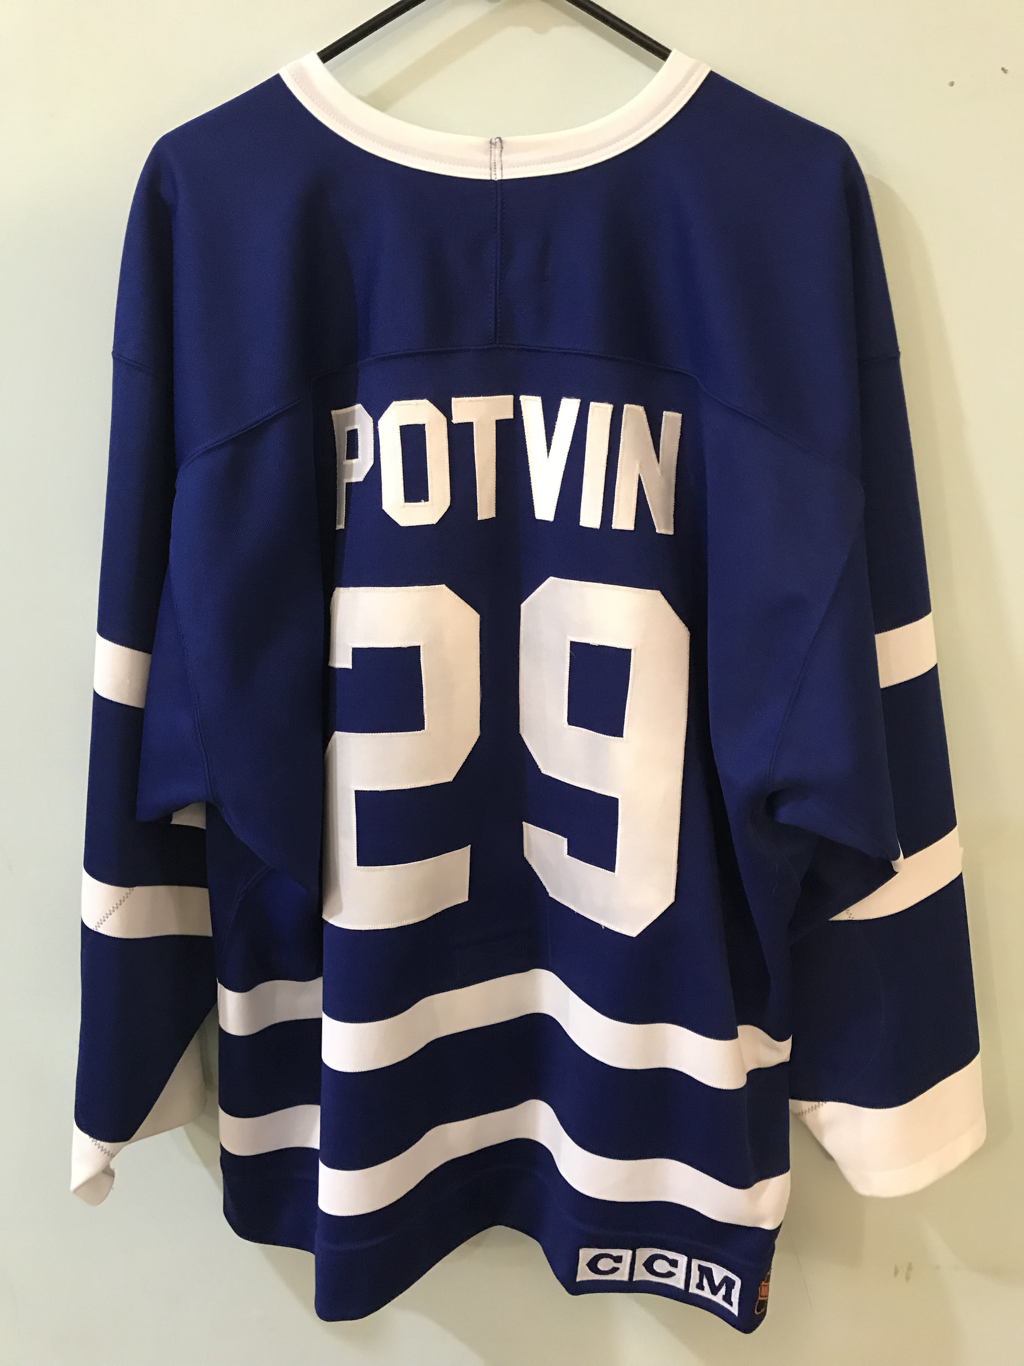 1991-92 Felix Potvin Maple Leafs Game Worn Jersey - Rookie Jersey